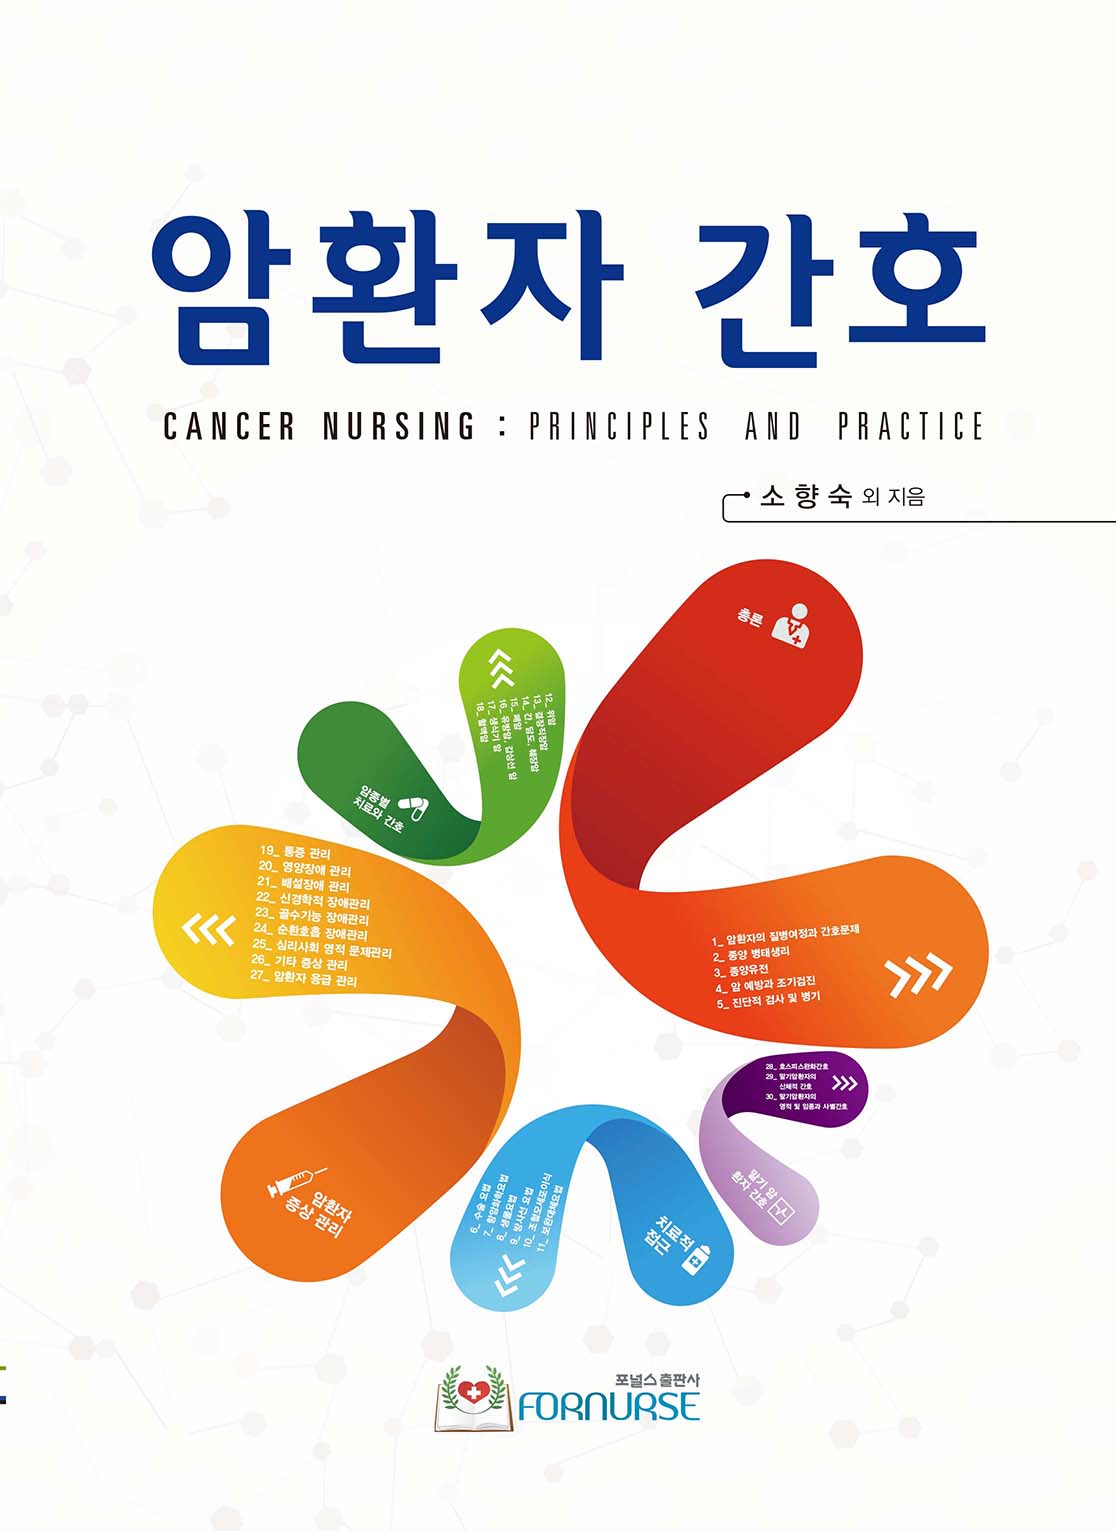 암환자 간호= Cancer nursing : principles and practice